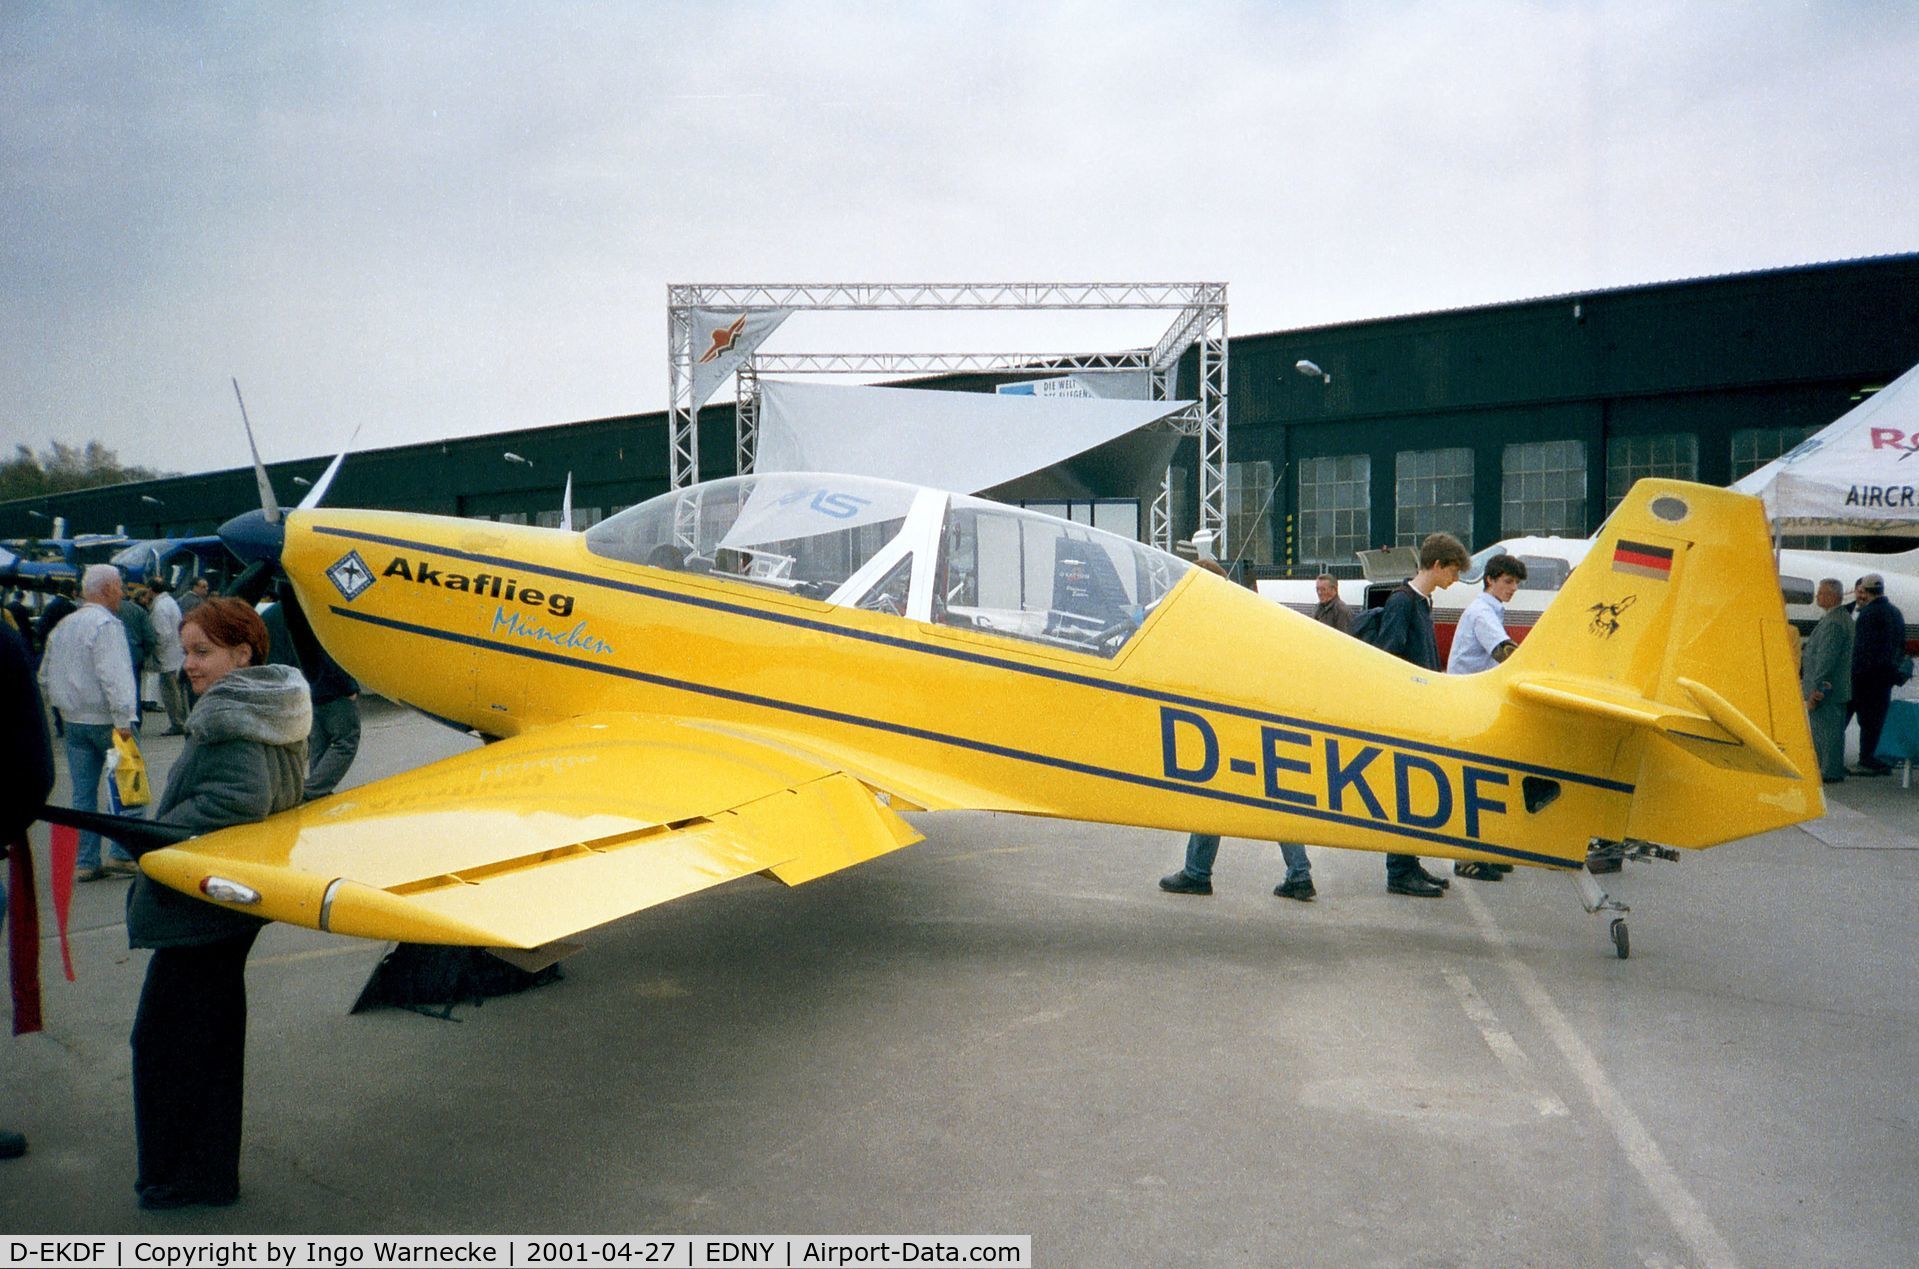 D-EKDF, Akaflieg München Mü-30 Schlacro C/N V-1, Akaflieg München Mü-30 Schlacro at the AERO 2001, Friedrichshafen